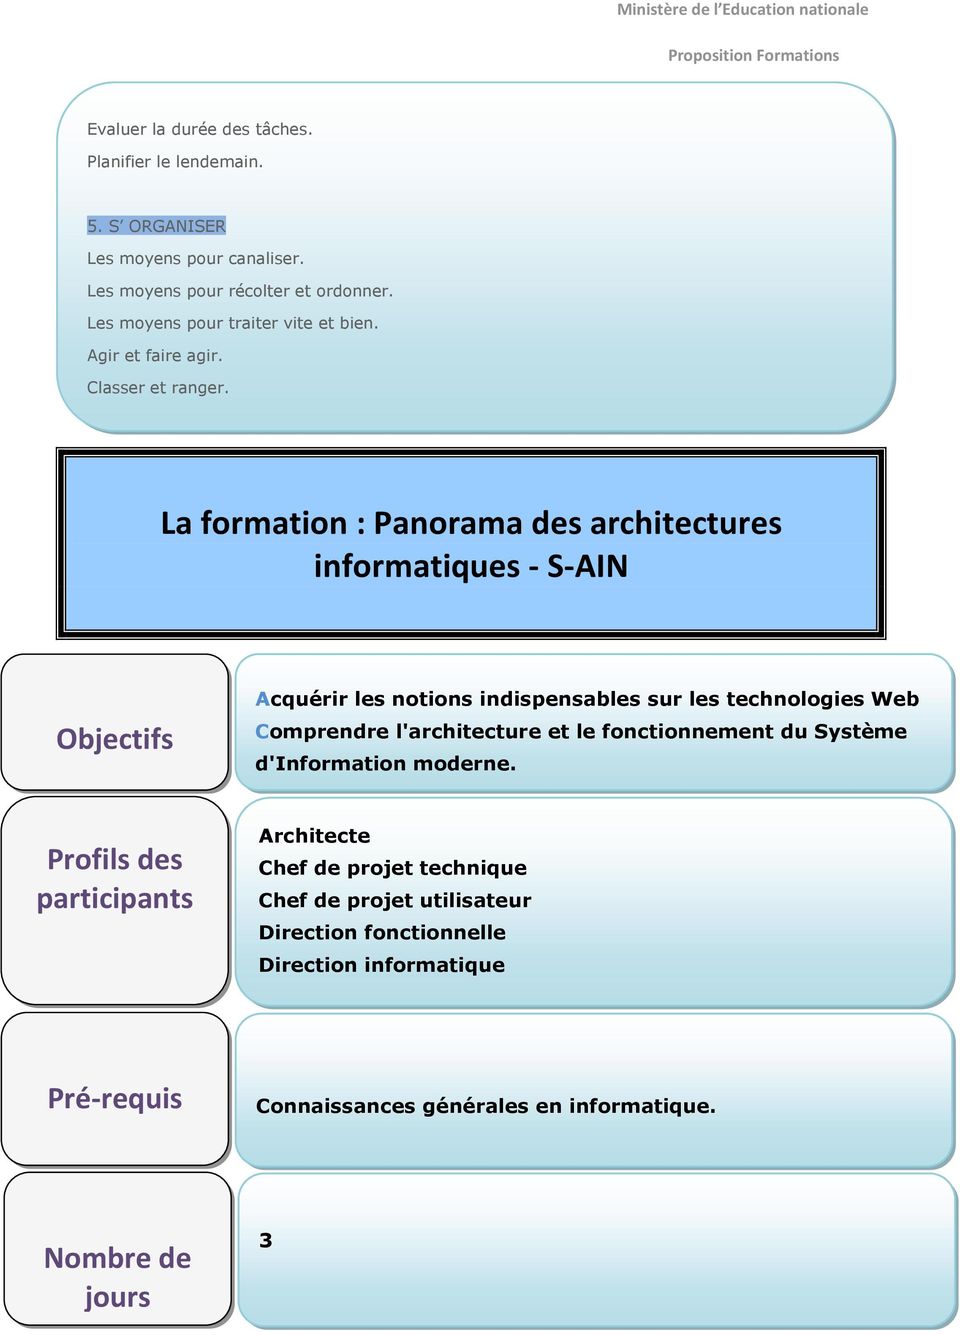 La formation : Panorama des architectures informatiques - S-AIN Objectifs Acquérir les notions indispensables sur les technologies Web Comprendre l'architecture et